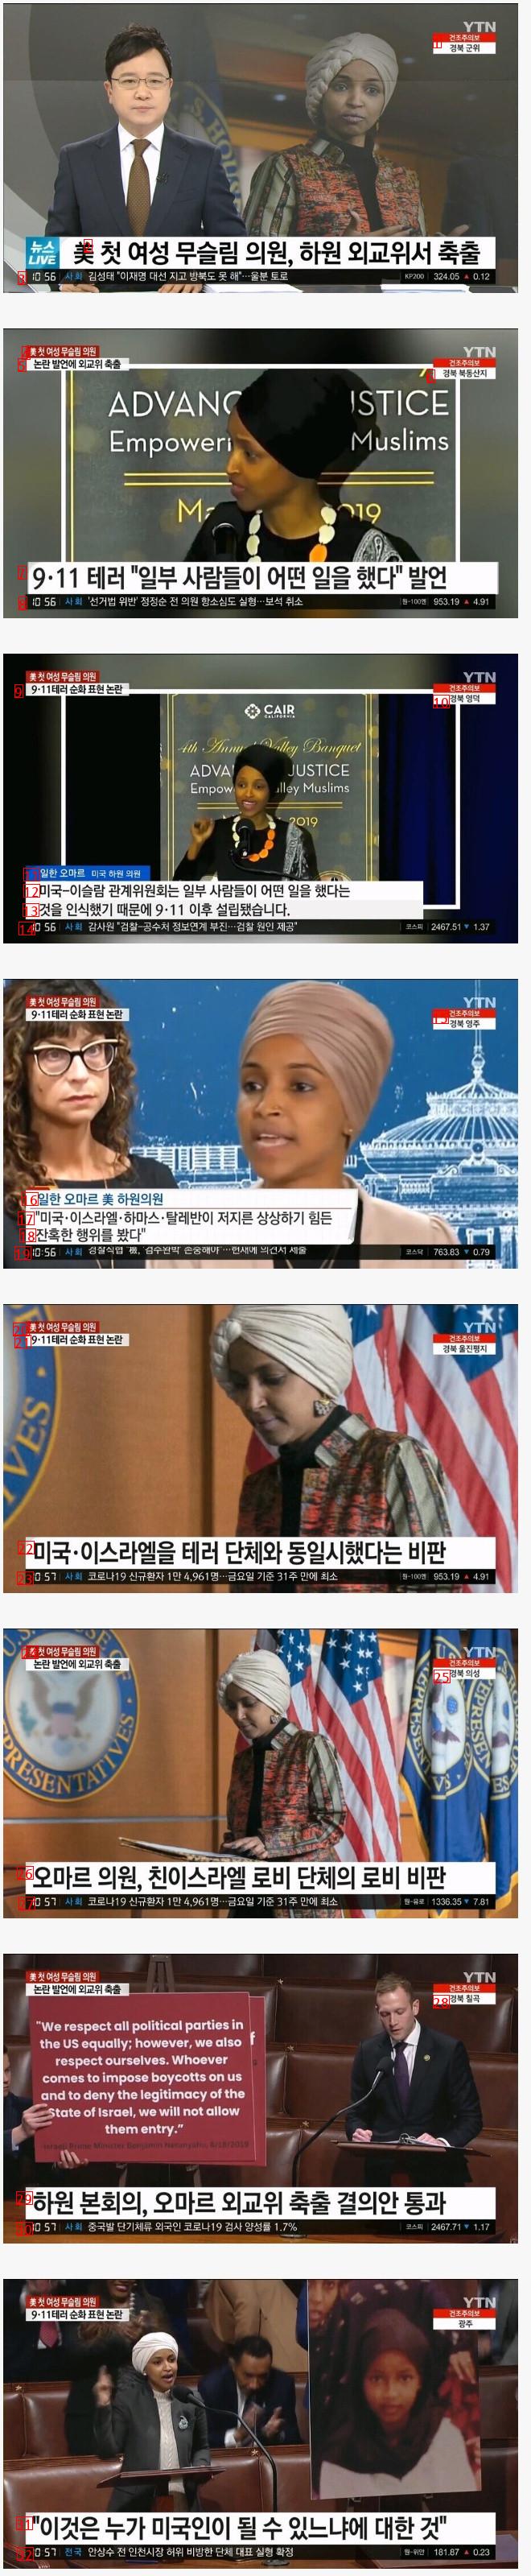 미국 첫 여성 무슬림 의원이 퇴출되게 만든 미친 발언